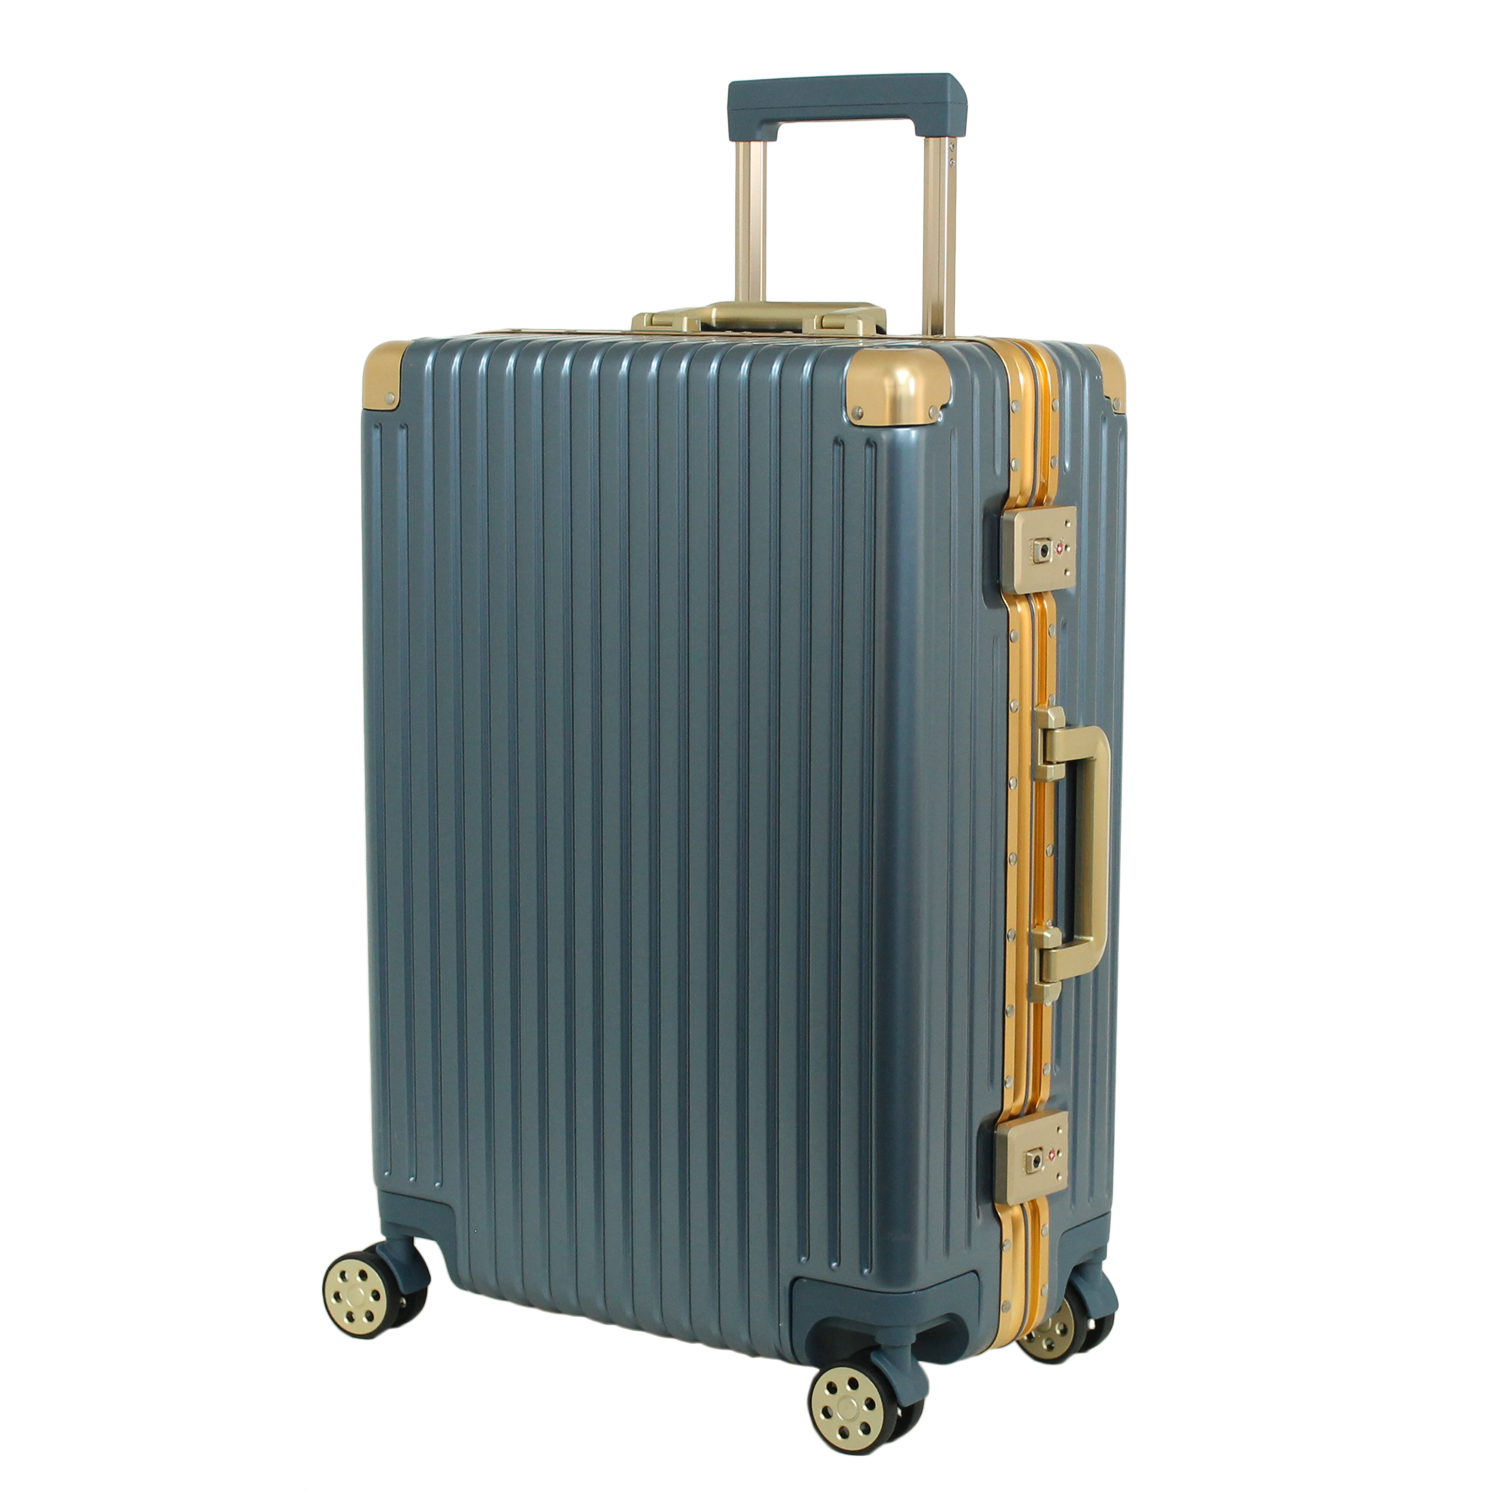 5000/OFF] スーツケース Lサイズ キャリーケース 日本企業企画 送料 